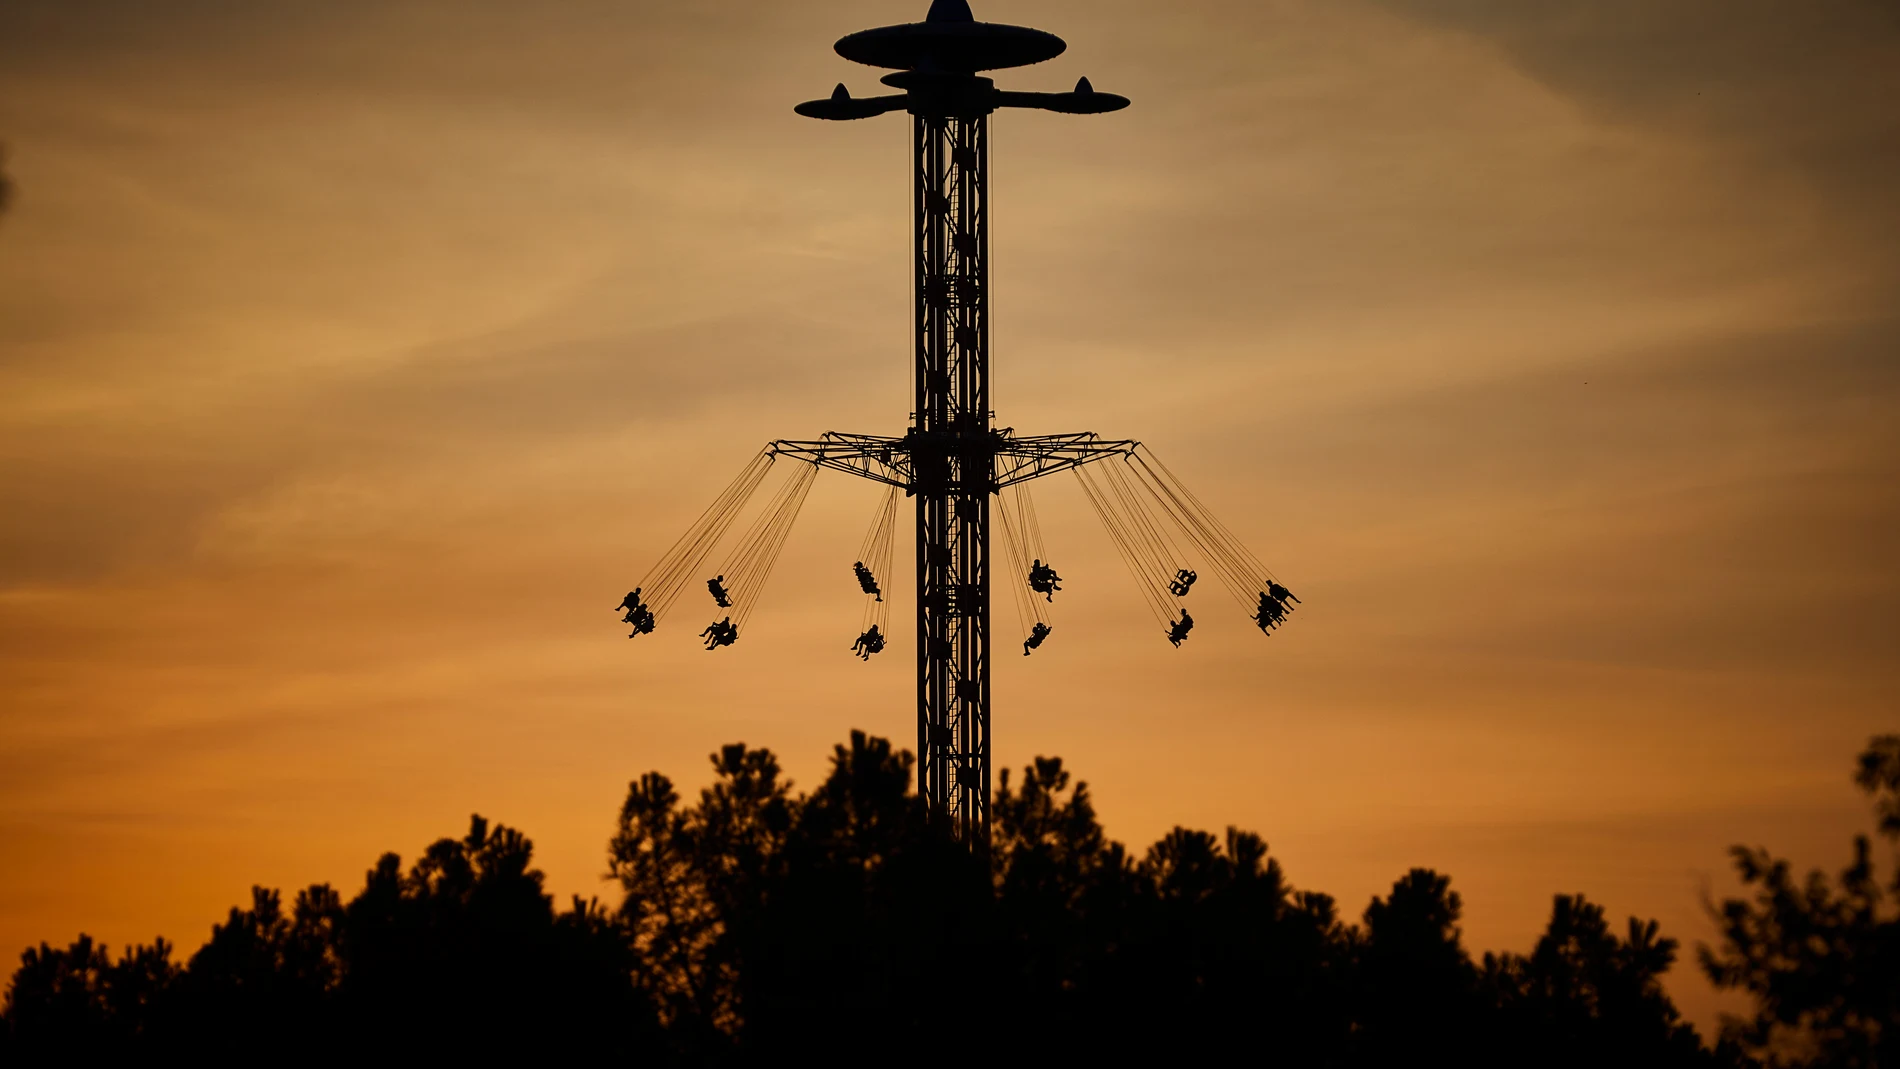 Atracción “Star Flyer” sillas voladoras del parque de atracciones de Madrid